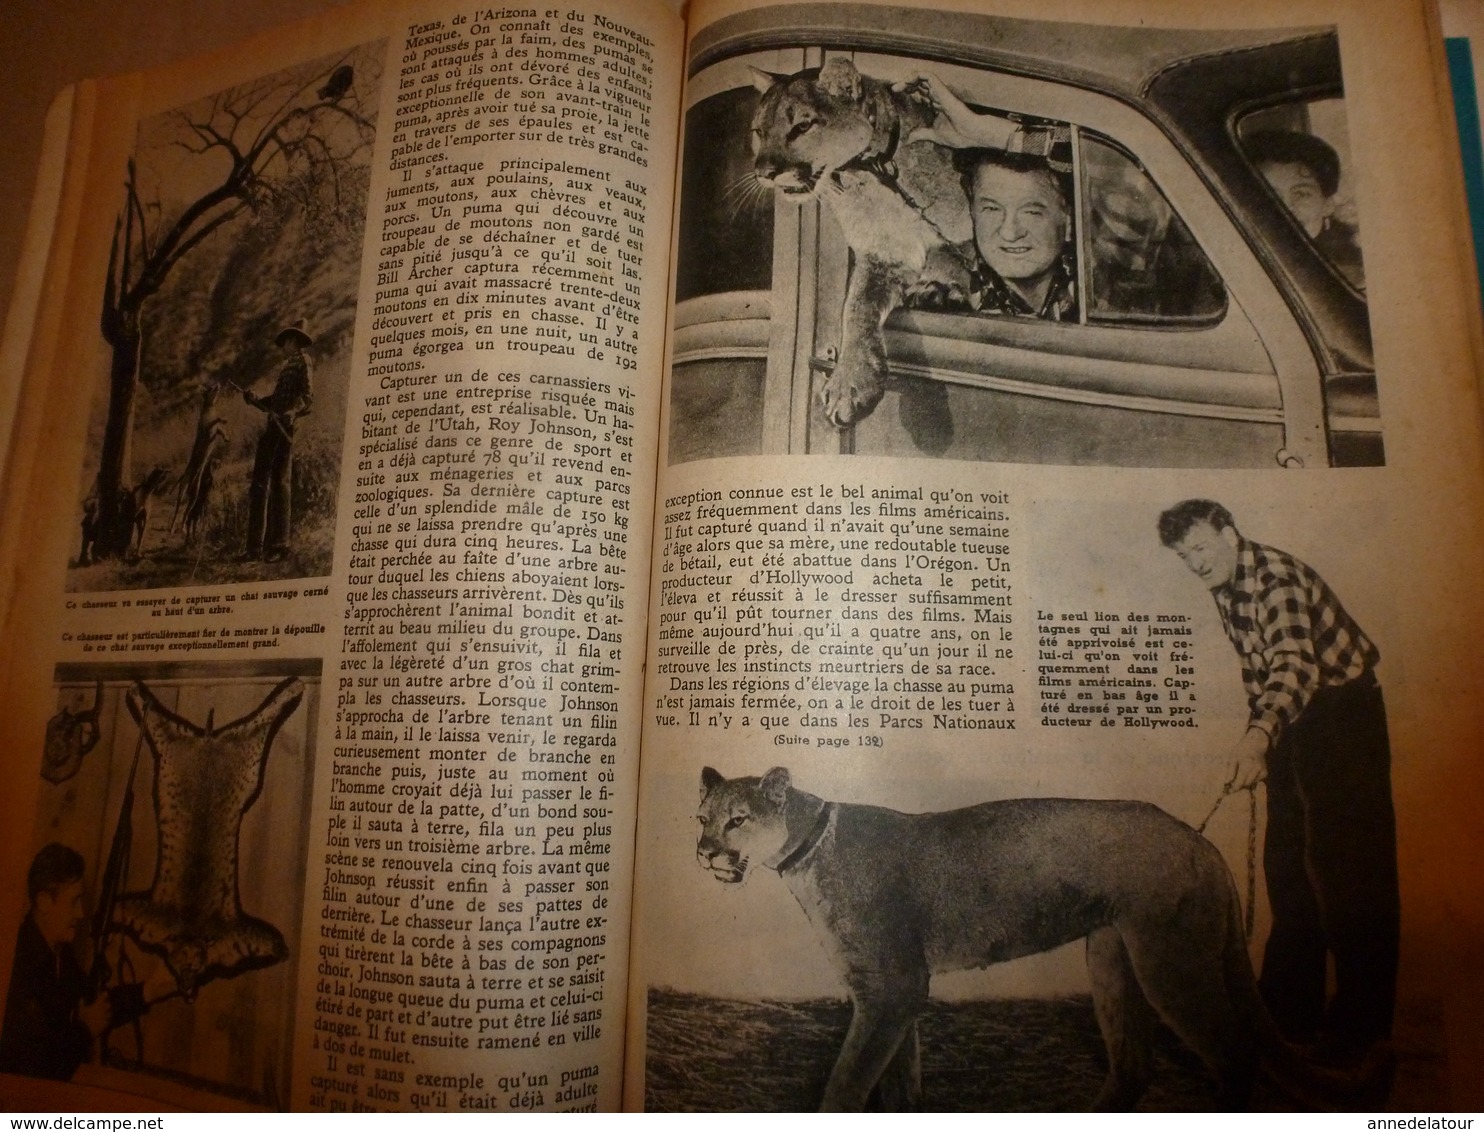 1948 MÉCANIQUE POPULAIRE:Automobile Hudson;Sauvegarde des forêts; L'avion CONSTITUTION;Chasse au puma;Cruiser-moteur;etc